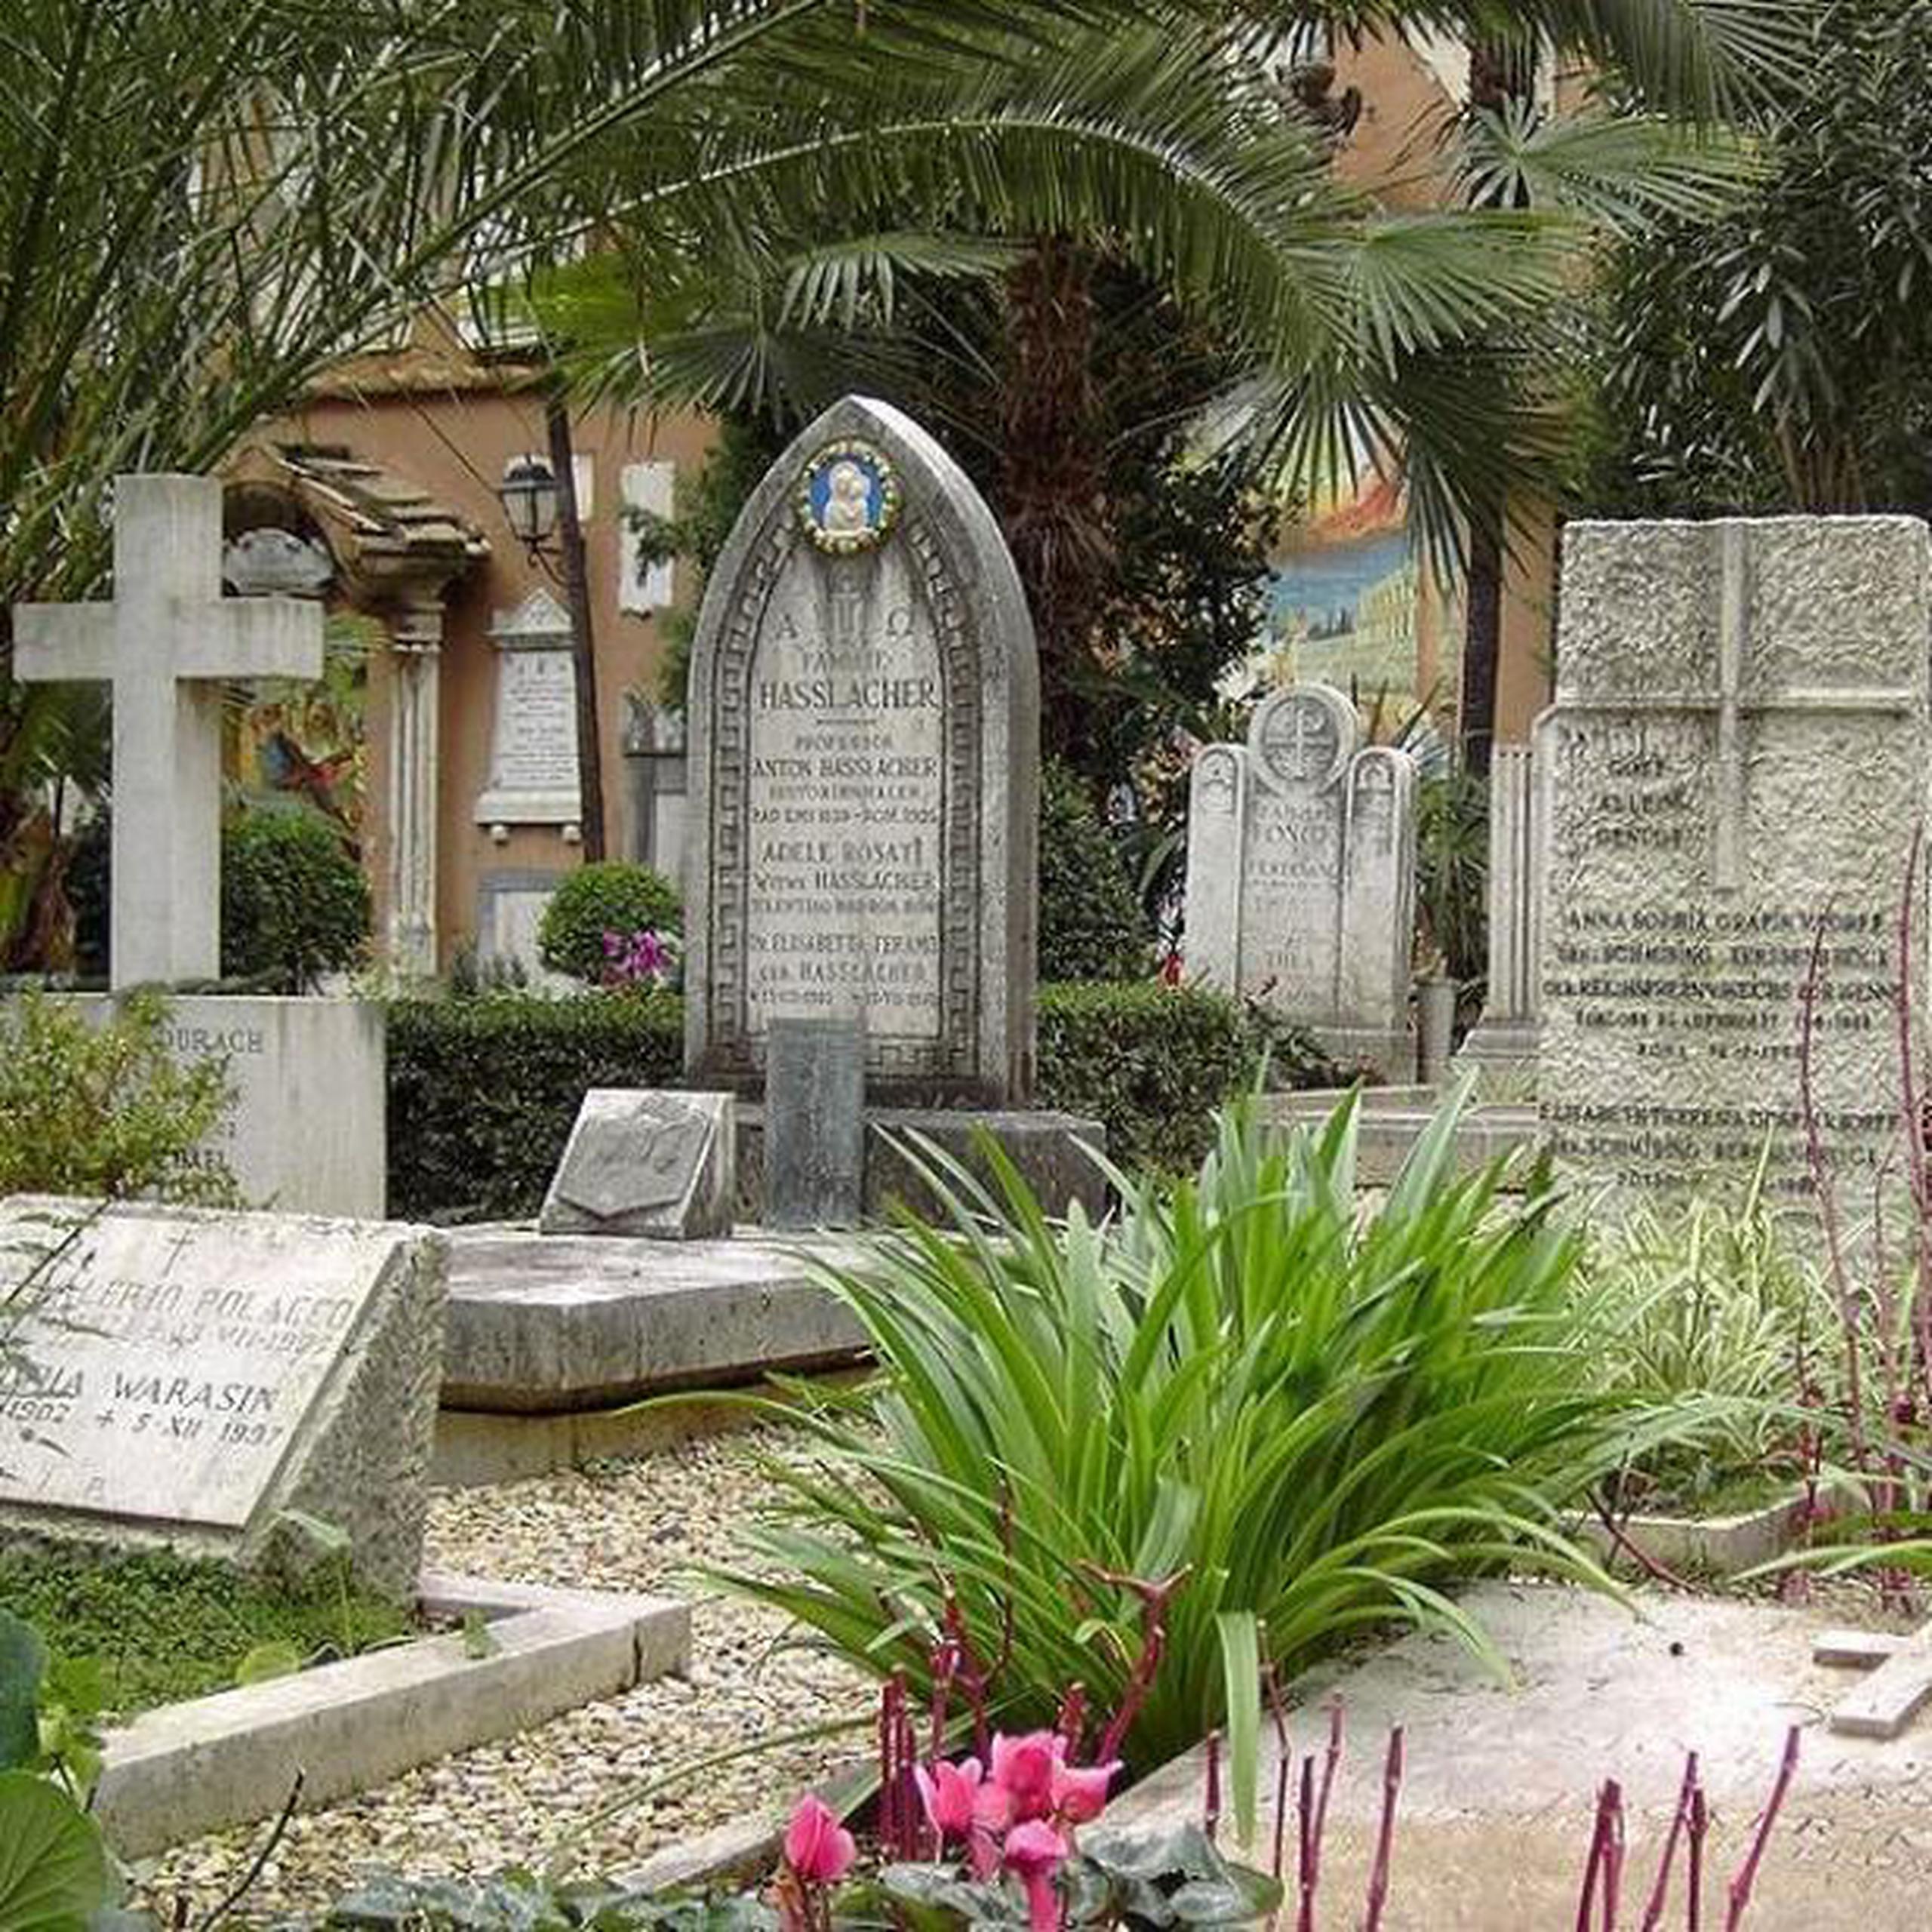 Las cenizas del niño se encuentran en este cementerio desde 2015, después de que el mismo Francisco pidió los permisos necesarios para su traslado desde Buenos Aires al pequeño camposanto vaticano. (Archivo)